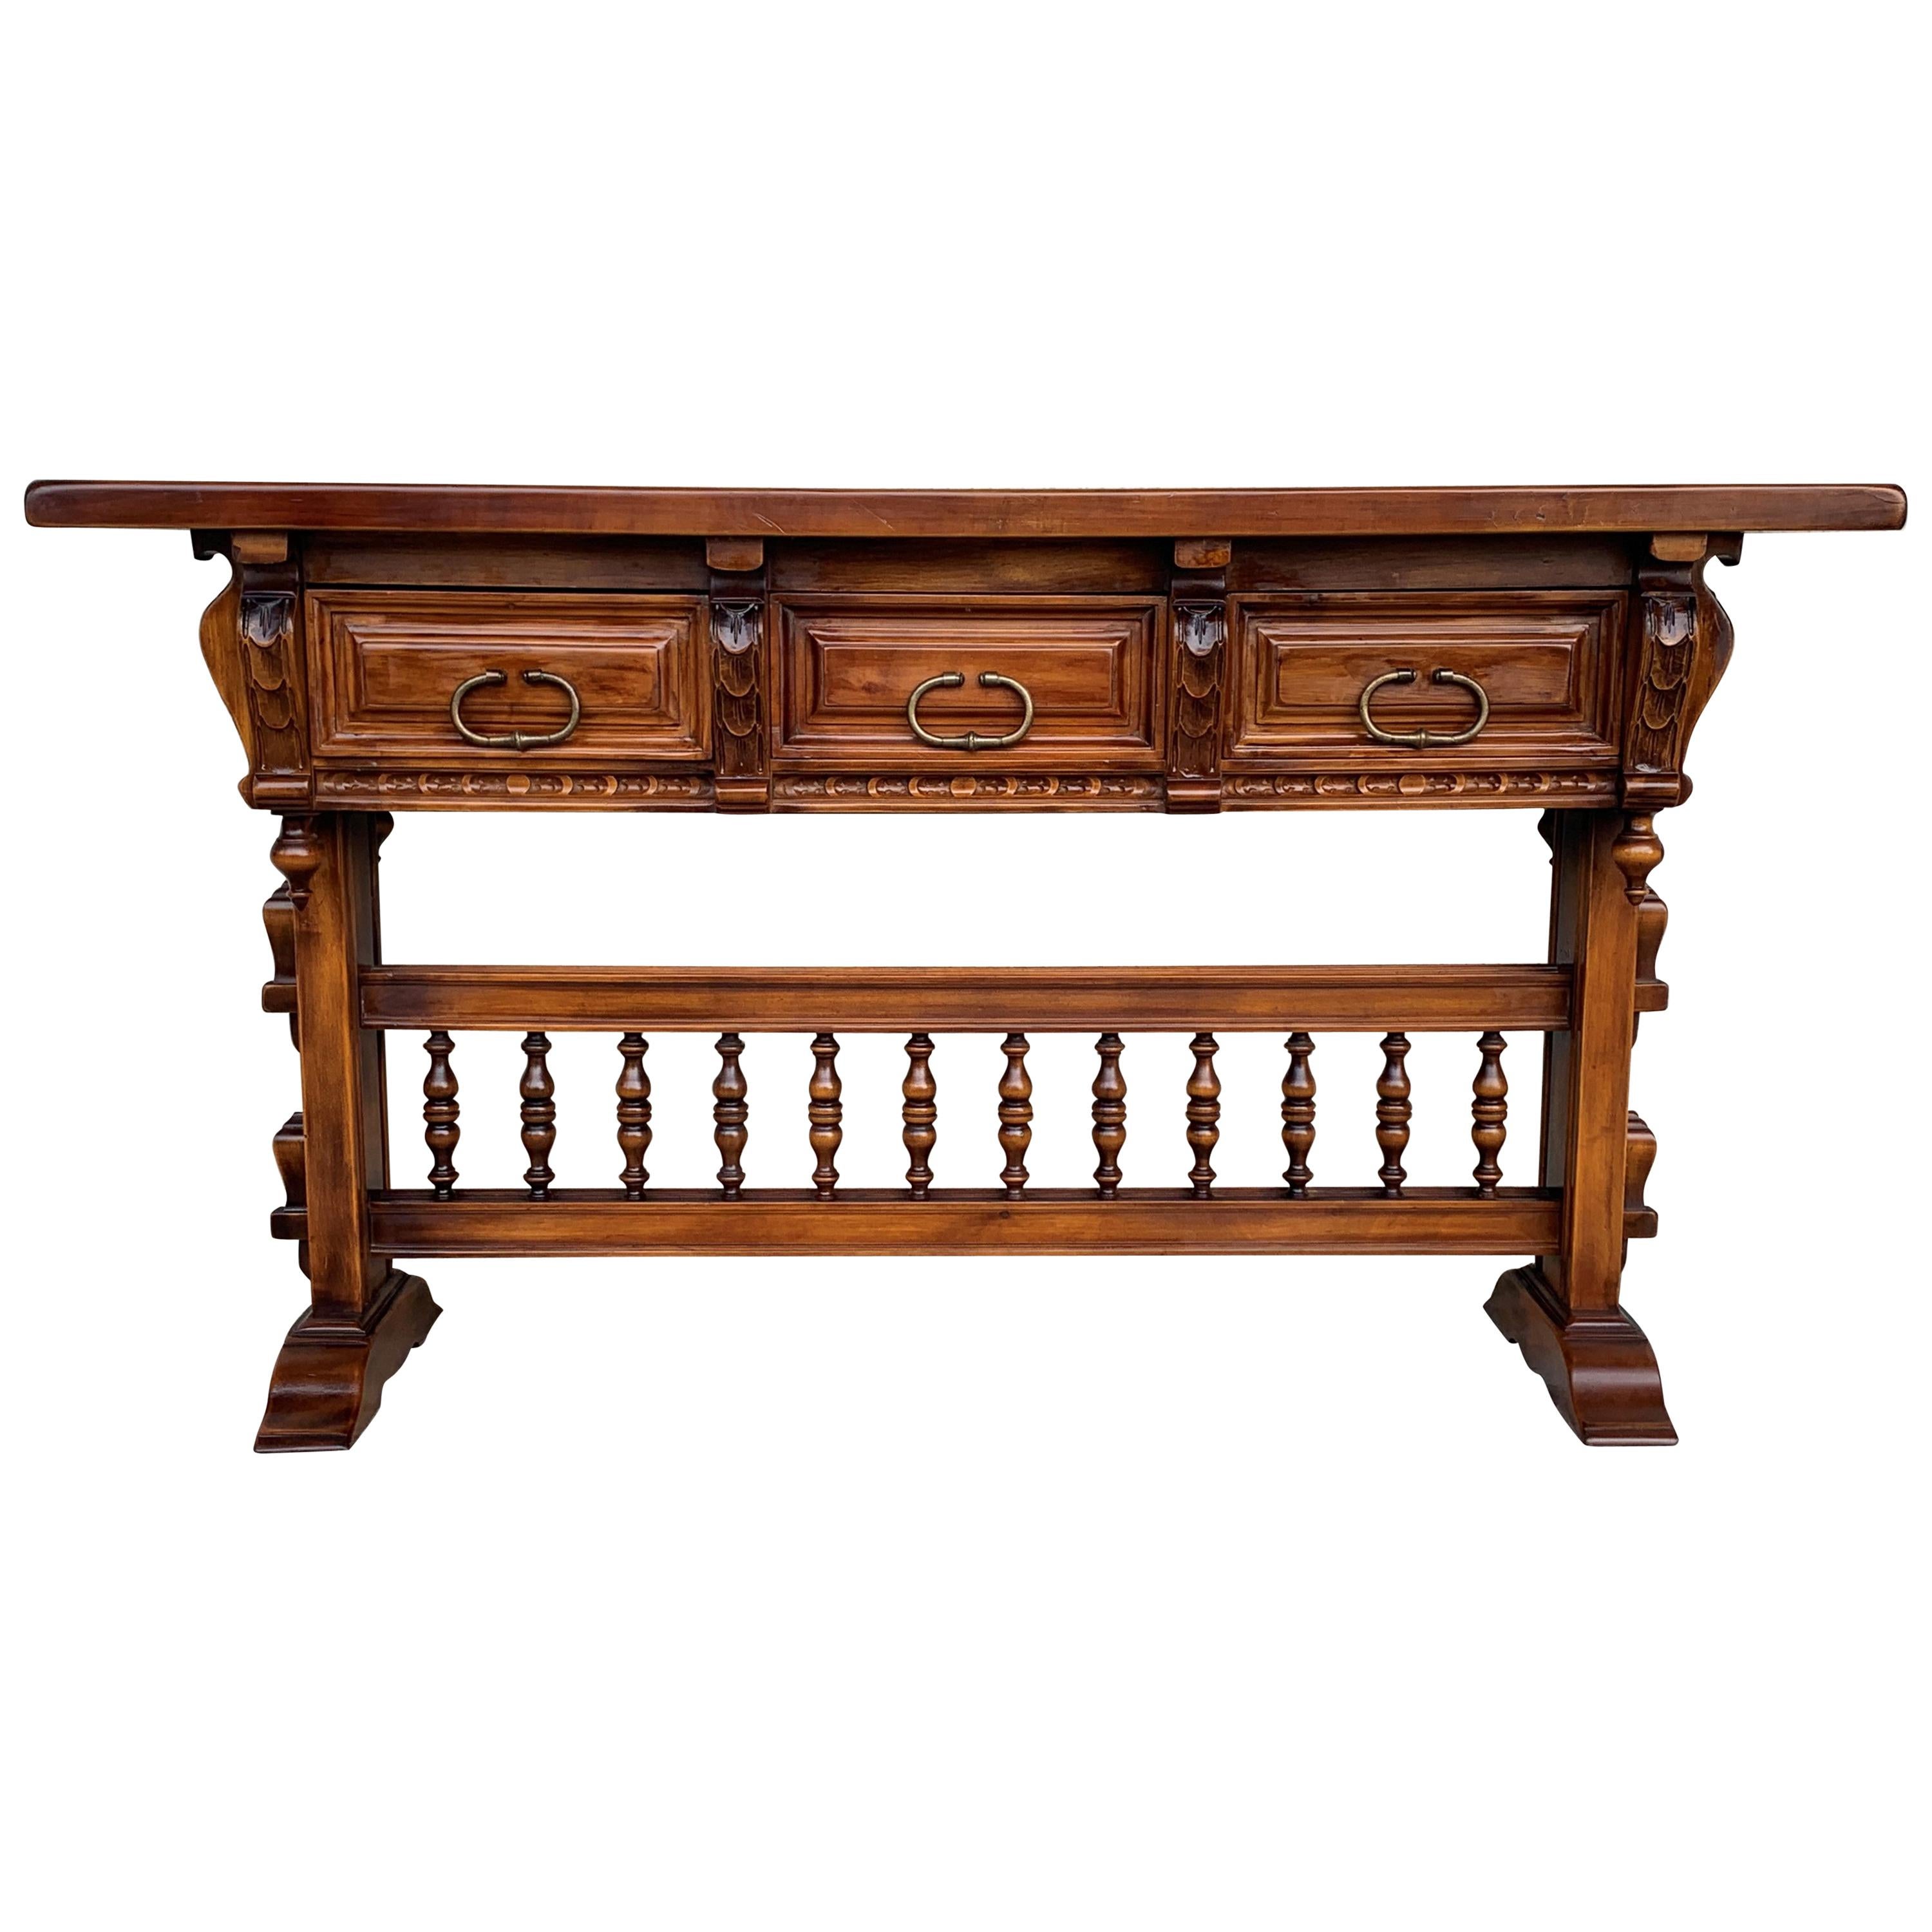 Table console baroque en noyer avec trois tiroirs sculptés et traverse extensible